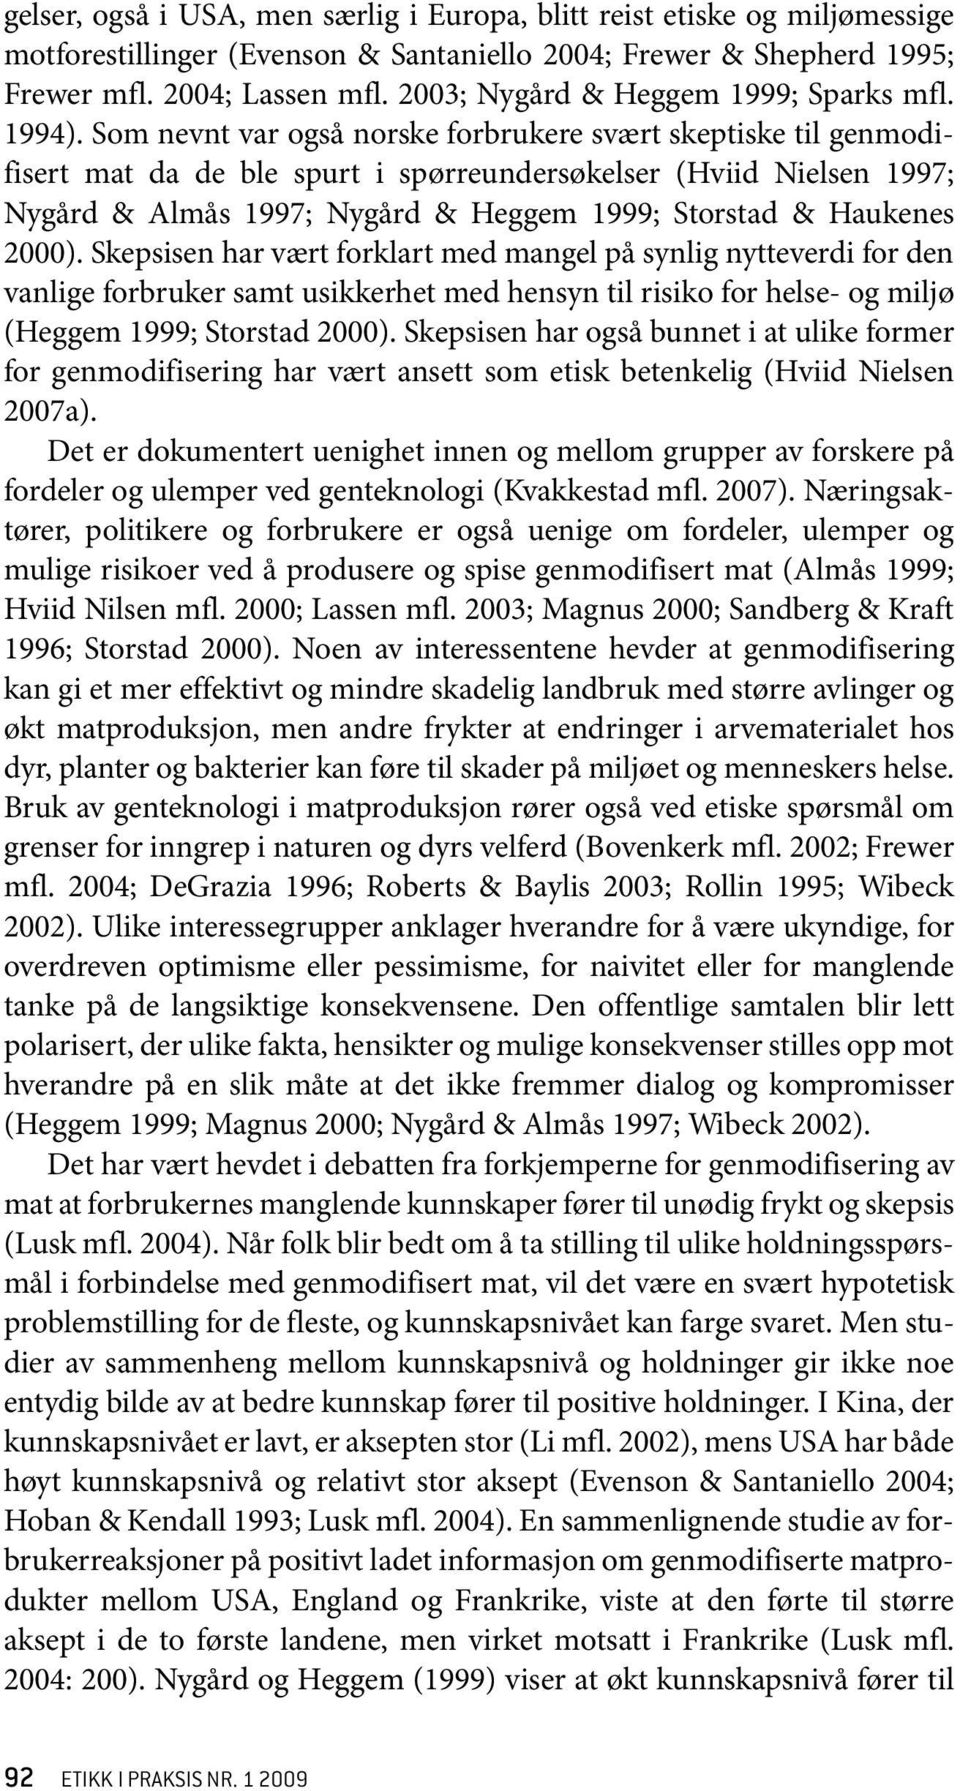 Som nevnt var også norske forbrukere svært skeptiske til genmodifisert mat da de ble spurt i spørreundersøkelser (Hviid Nielsen 1997; Nygård & Almås 1997; Nygård & Heggem 1999; Storstad & Haukenes